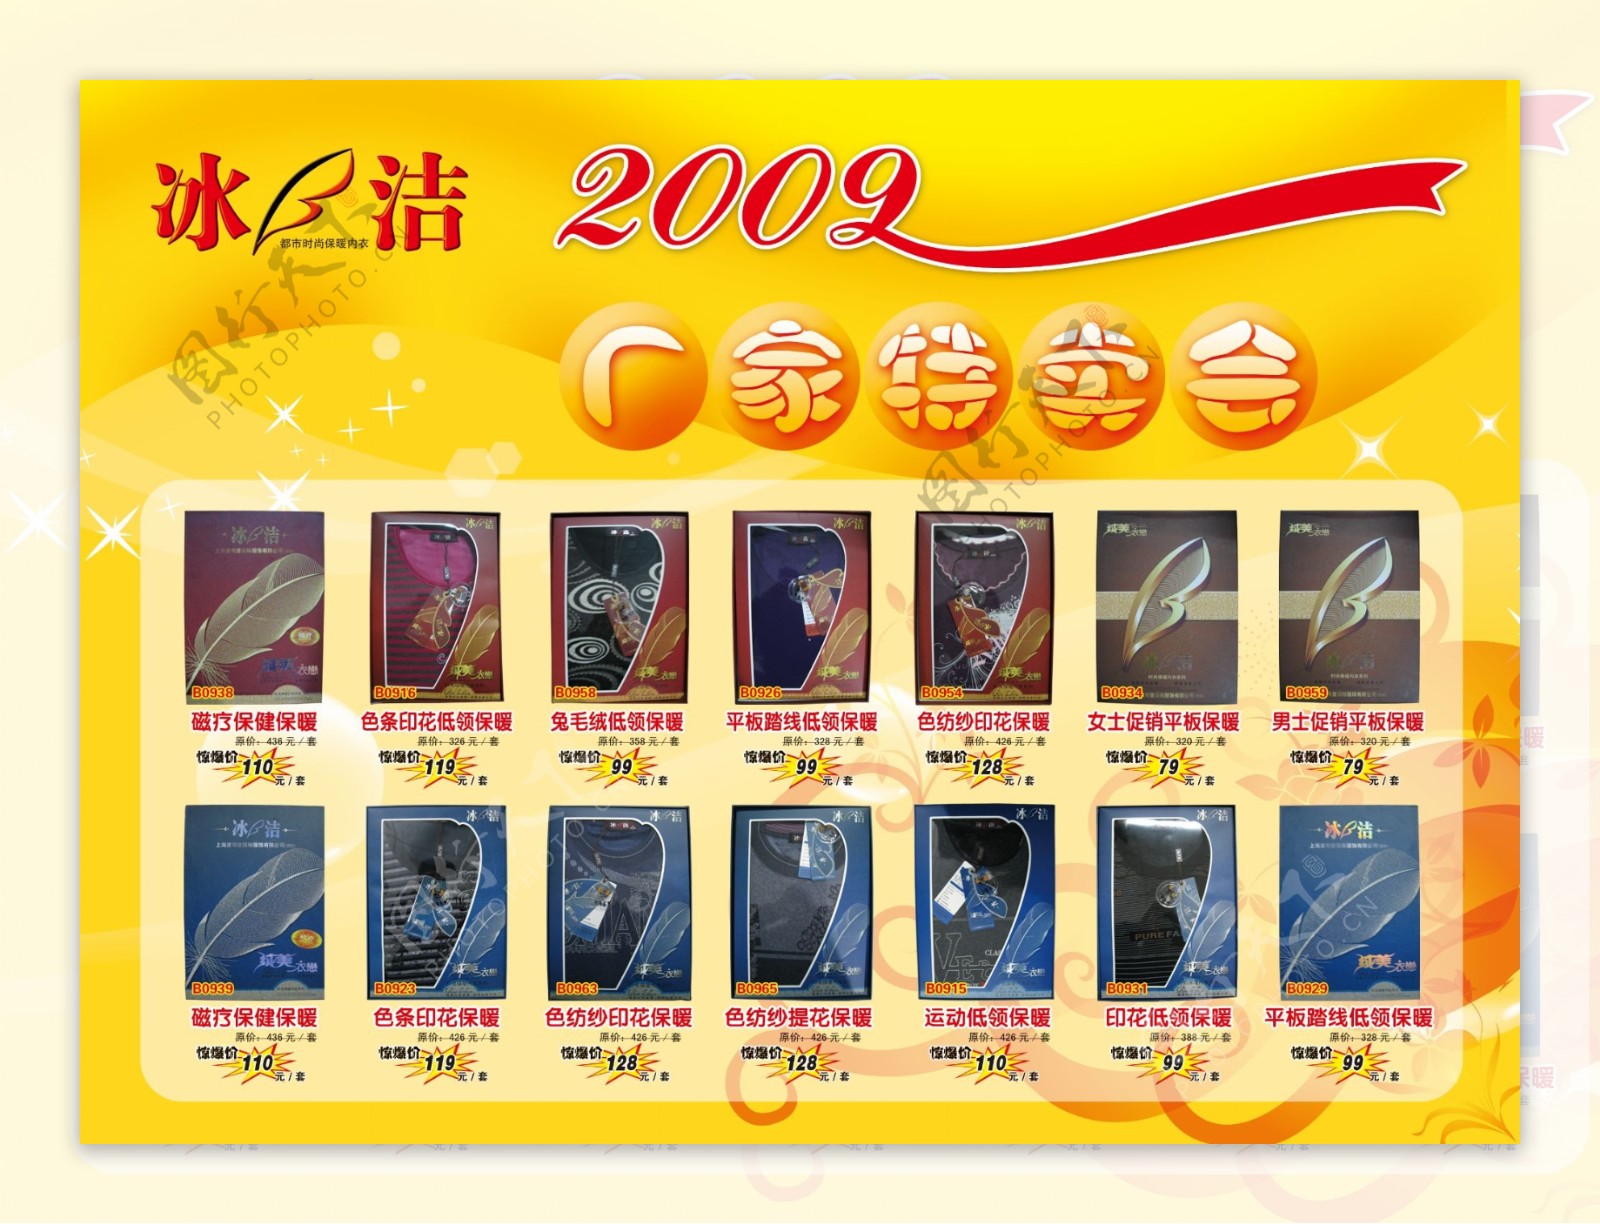 冰洁2009厂家特卖会中国驰名商标保暖内衣图片